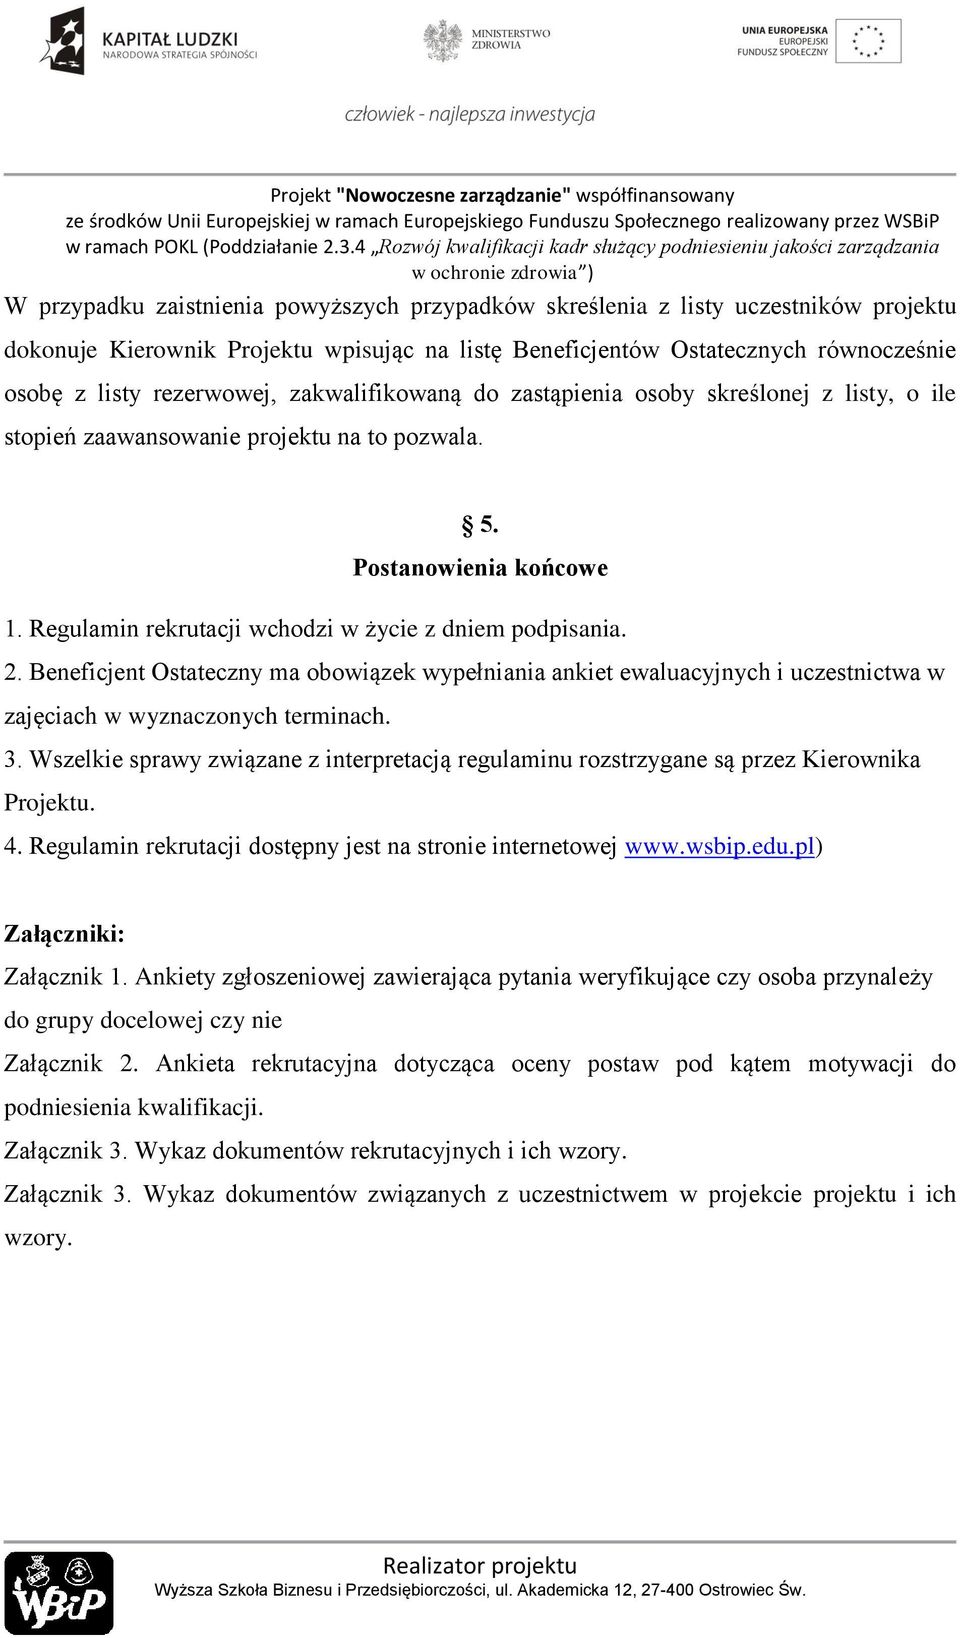 Beneficjent Ostateczny ma obowiązek wypełniania ankiet ewaluacyjnych i uczestnictwa w zajęciach w wyznaczonych terminach. 3.